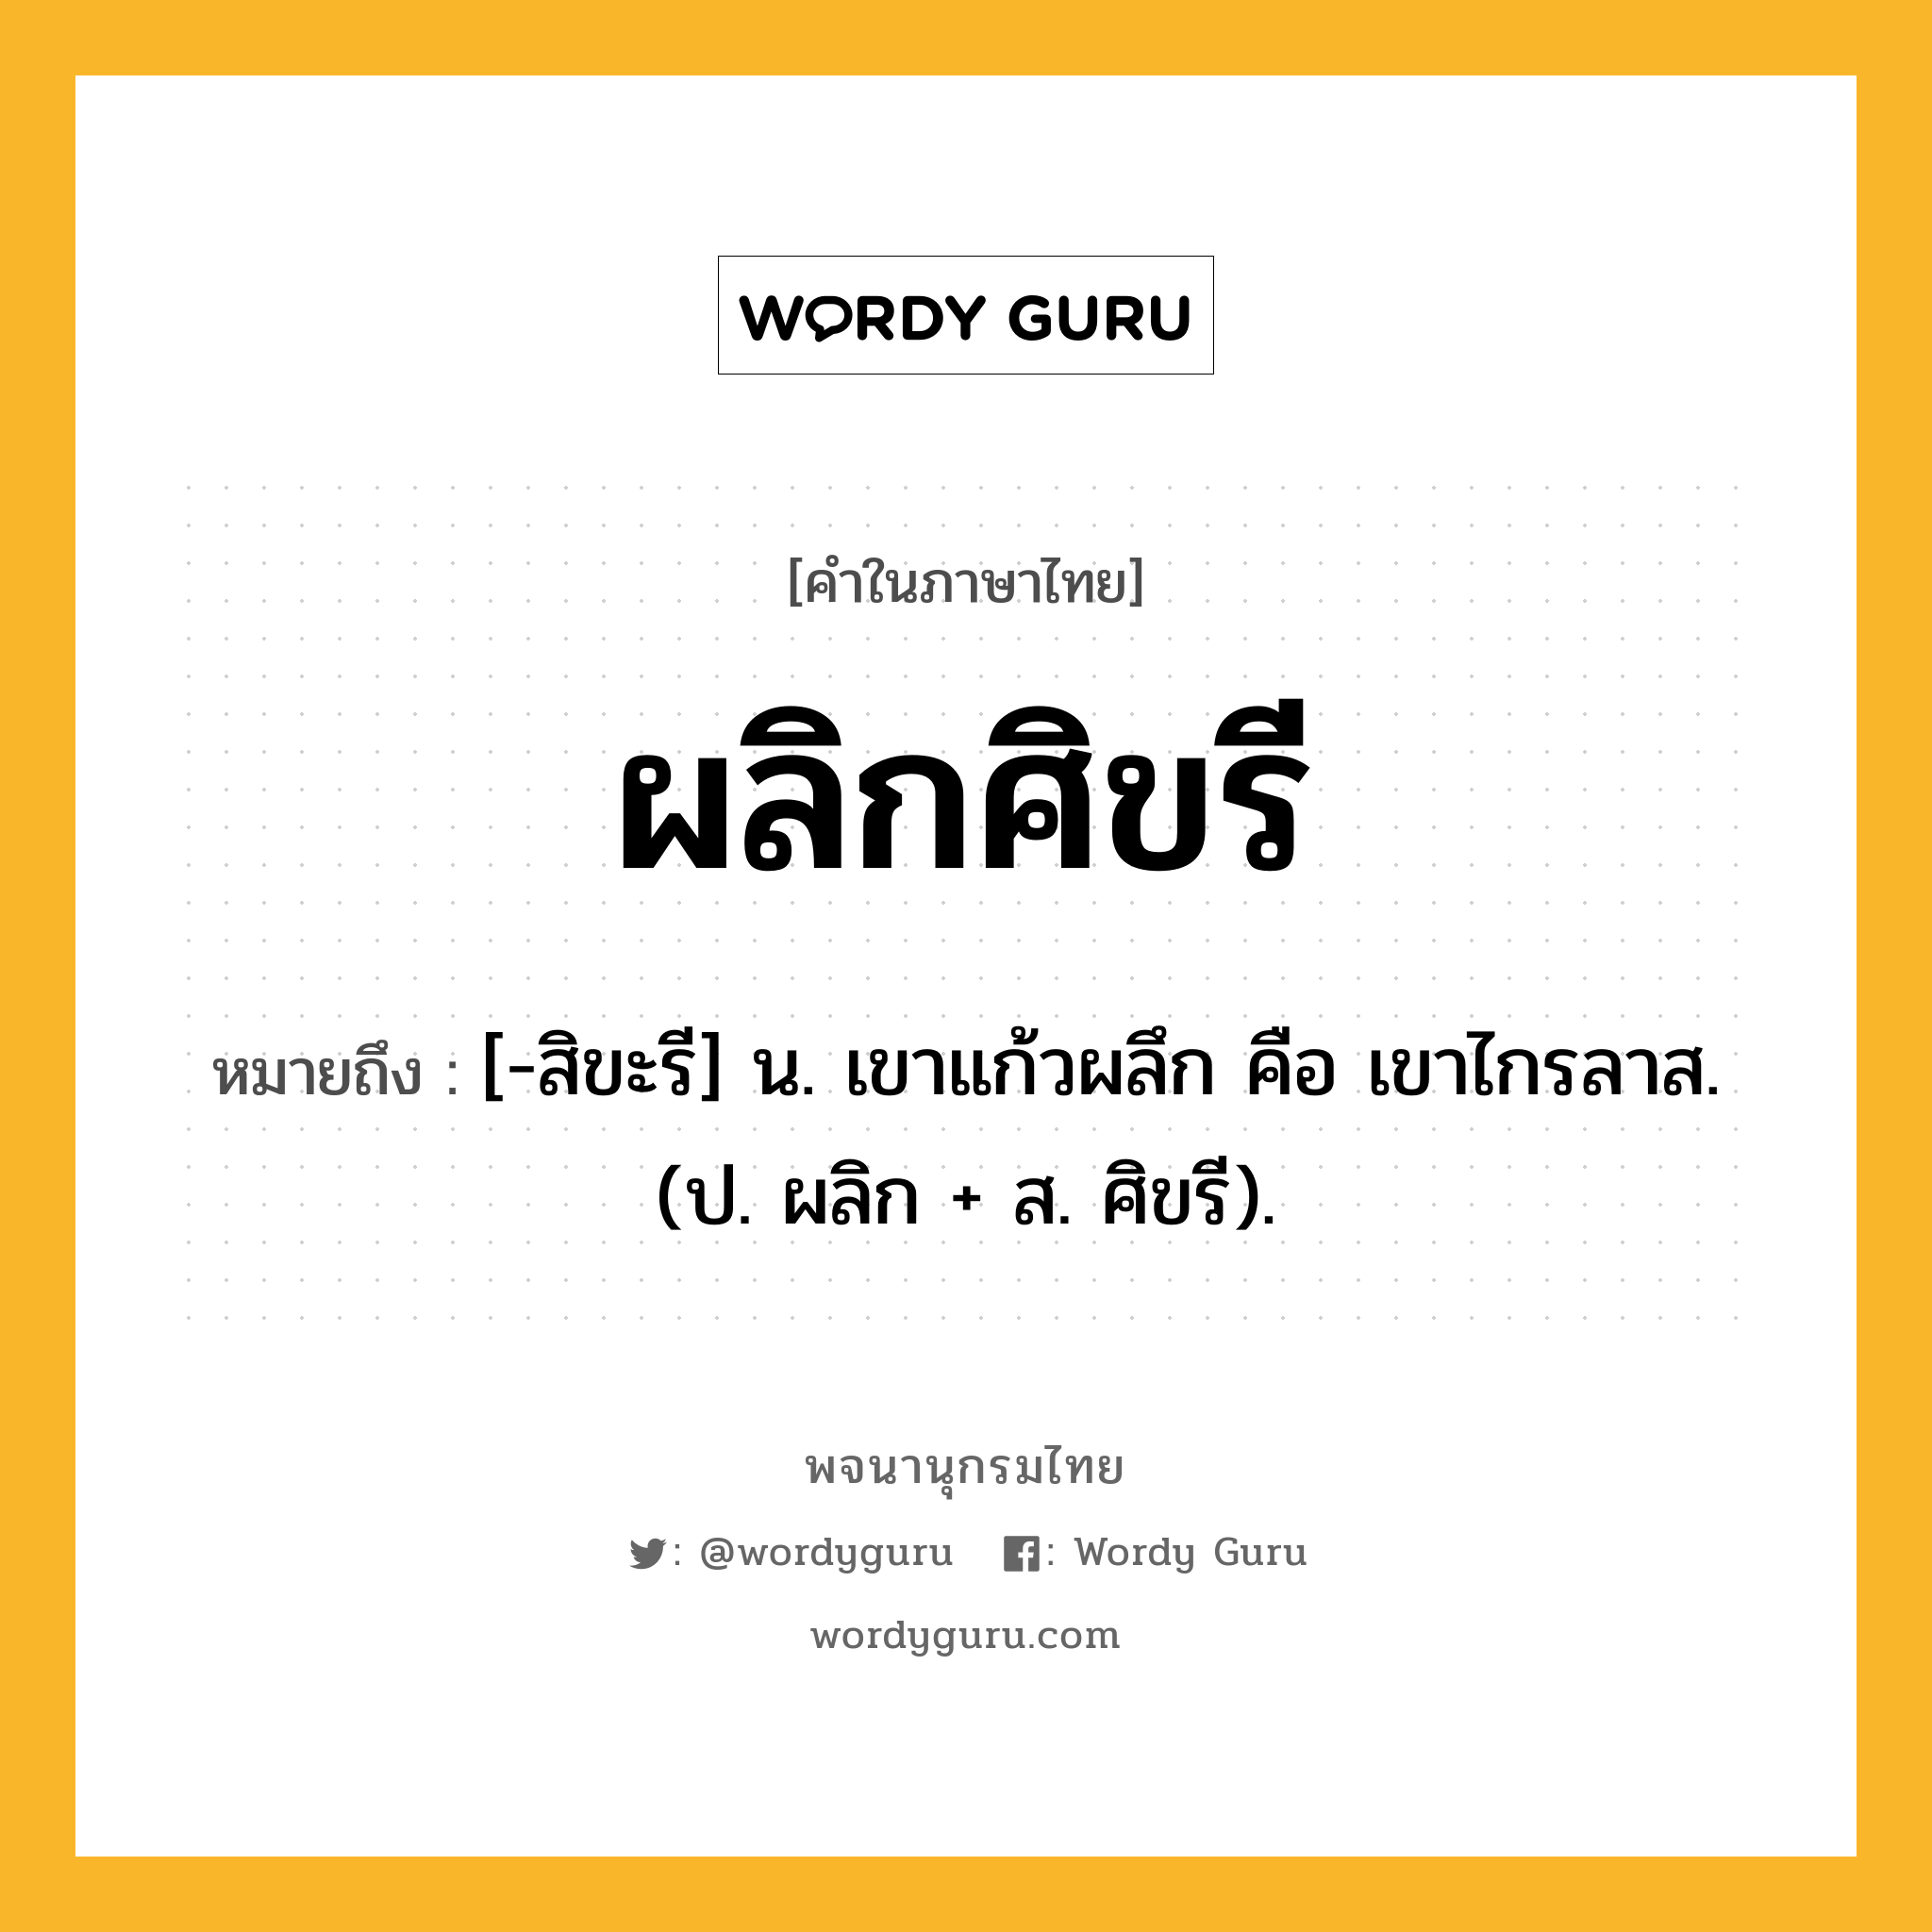 ผลิกศิขรี ความหมาย หมายถึงอะไร?, คำในภาษาไทย ผลิกศิขรี หมายถึง [-สิขะรี] น. เขาแก้วผลึก คือ เขาไกรลาส. (ป. ผลิก + ส. ศิขรี).